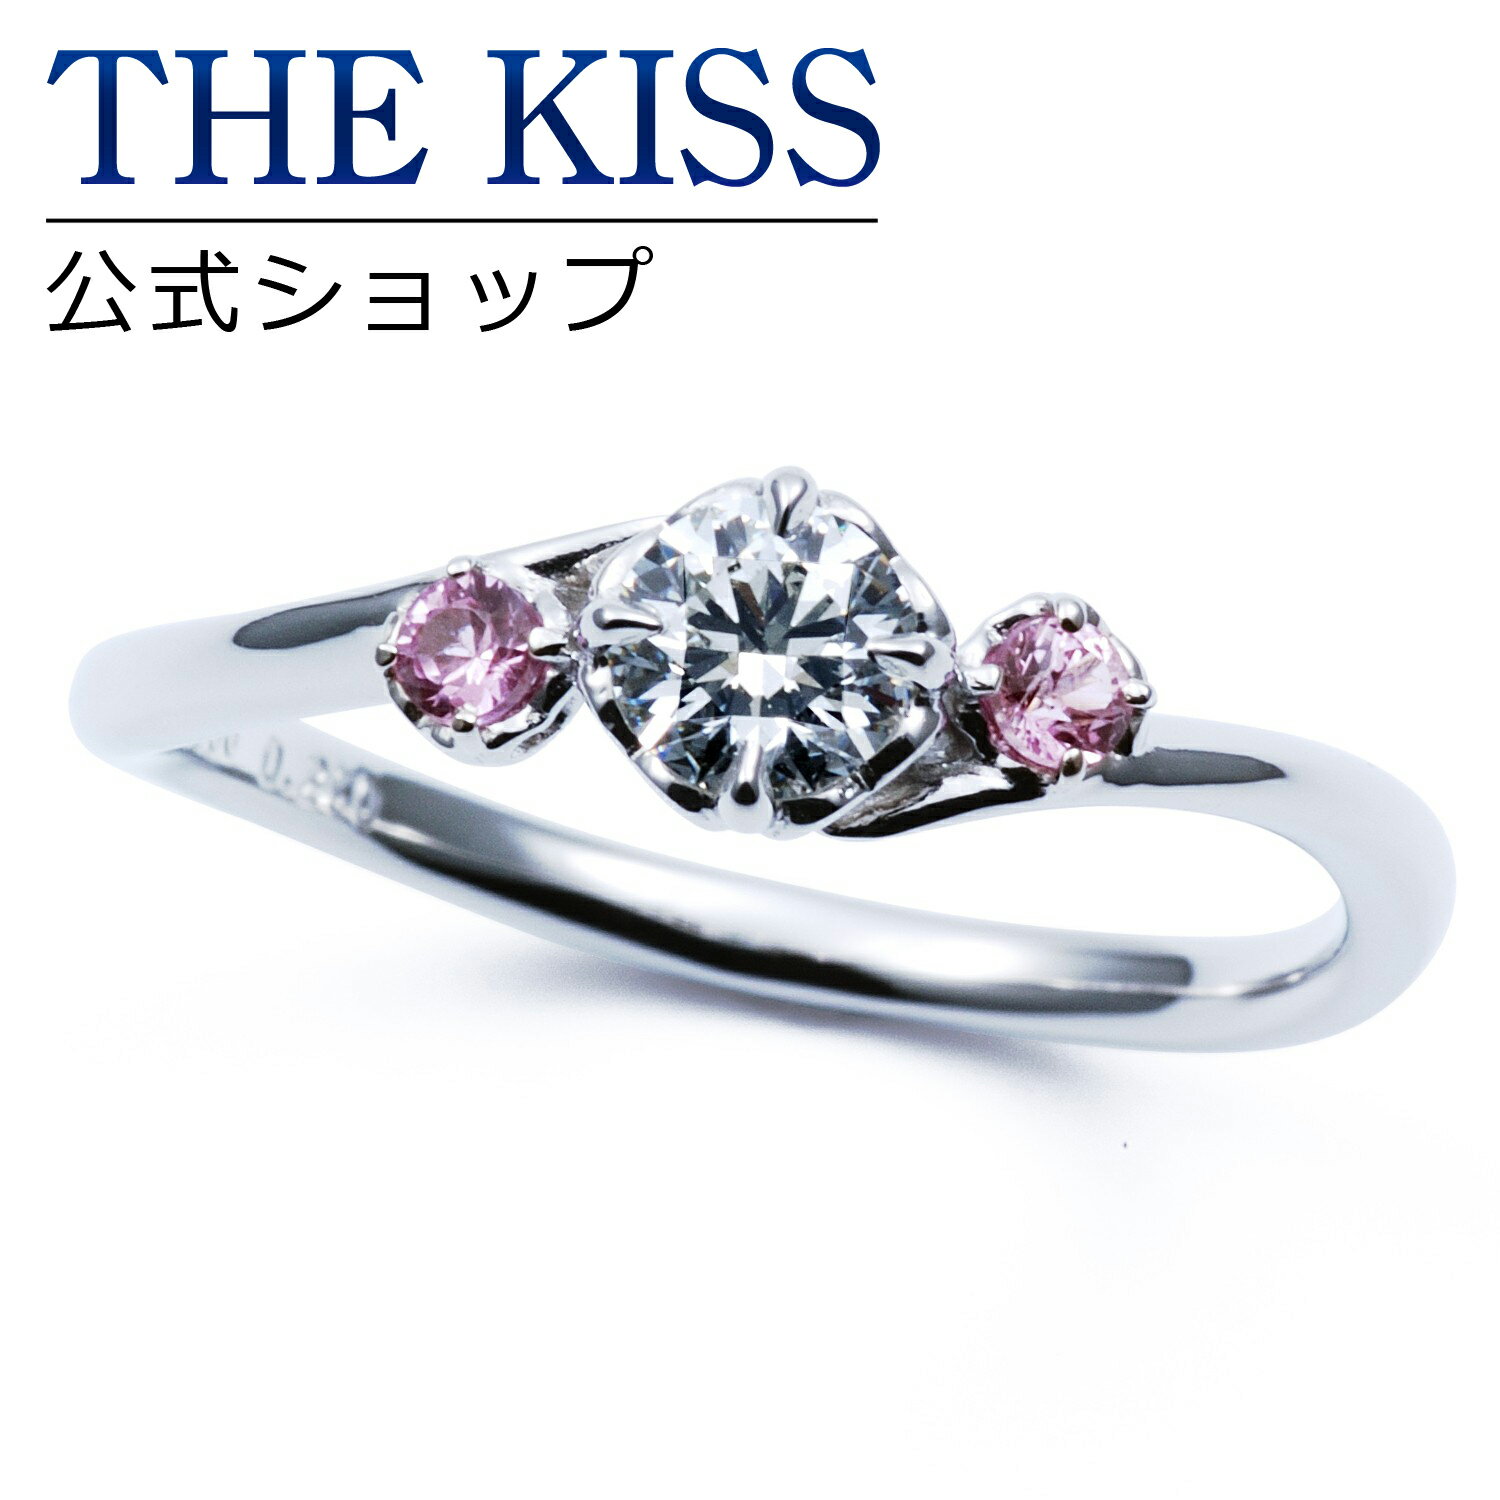 【ラッピング無料】【刻印無料】【THE KISS Anniversary】THE KISS 公式ショップ プラチナ エンゲージリング 婚約指輪 結婚指輪 ブライダルリング プロポーズ THE KISS ザキッス 指輪 6064500225 シンプル ブライダル 鑑定書付 ダイヤモンド【0.25ct F VS2 EX】